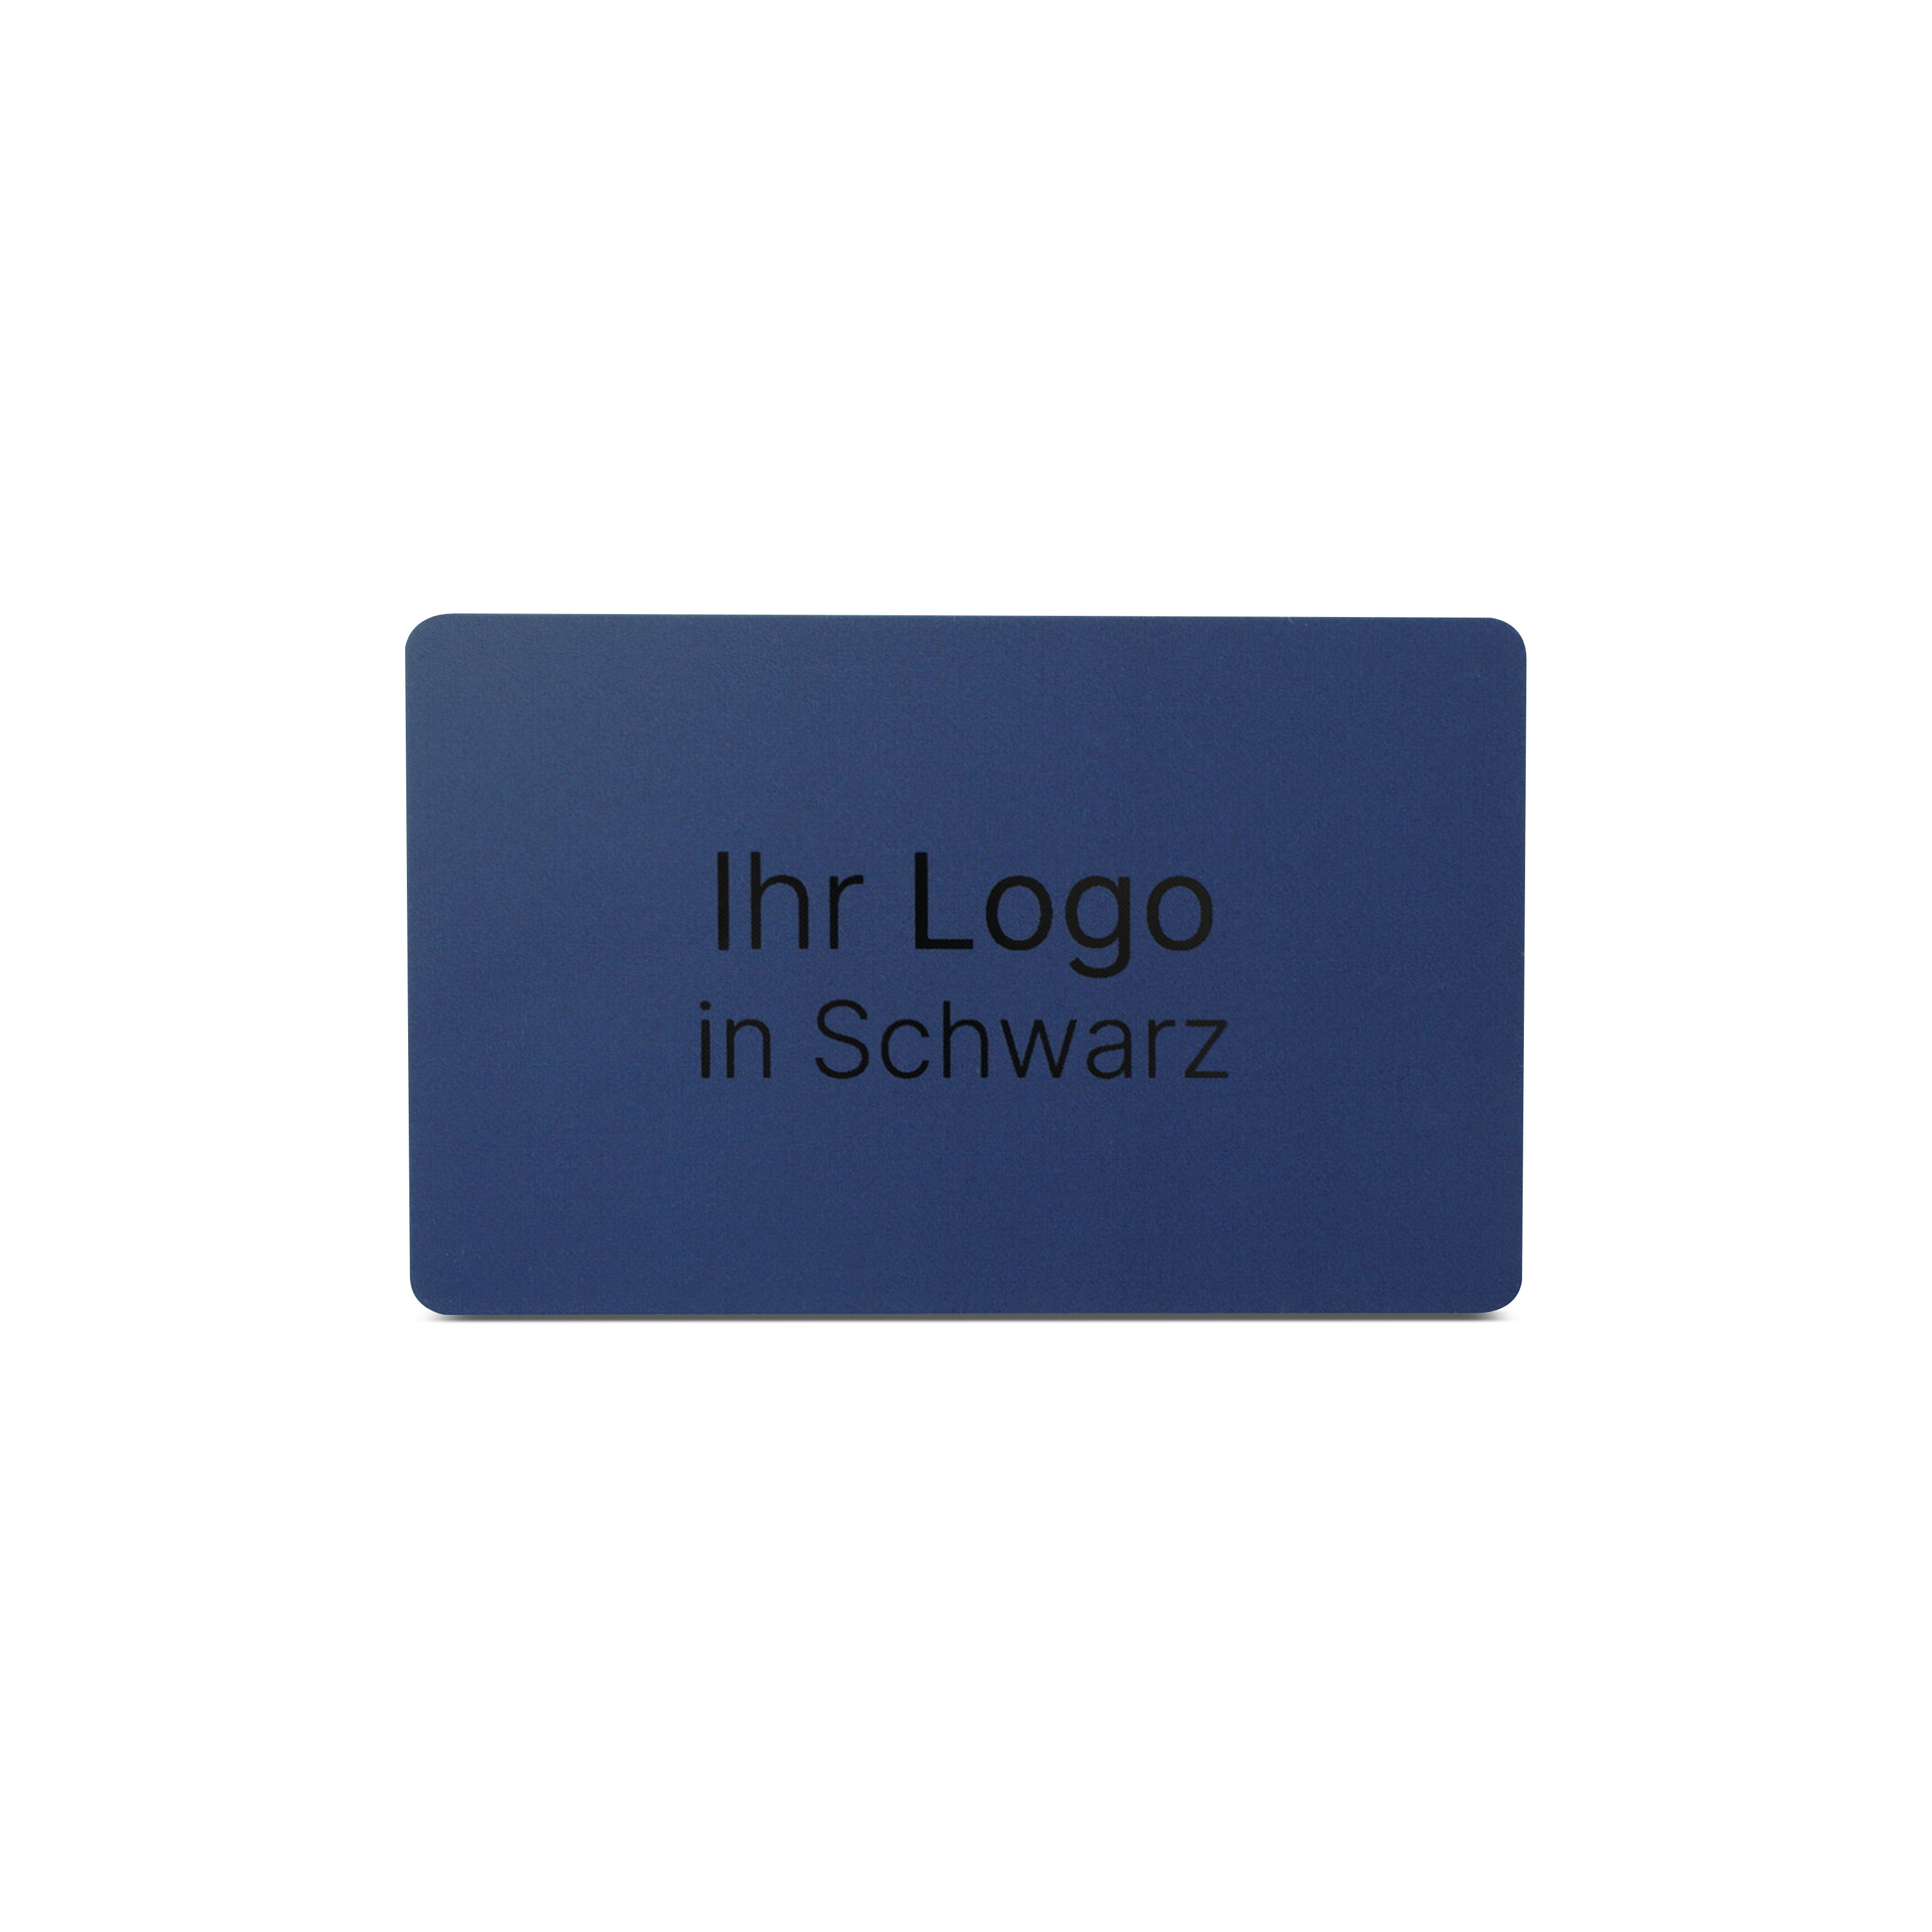 Blaue NFC Karte aus PVC mit Bedruckung "Ihr Logo in Schwarz"